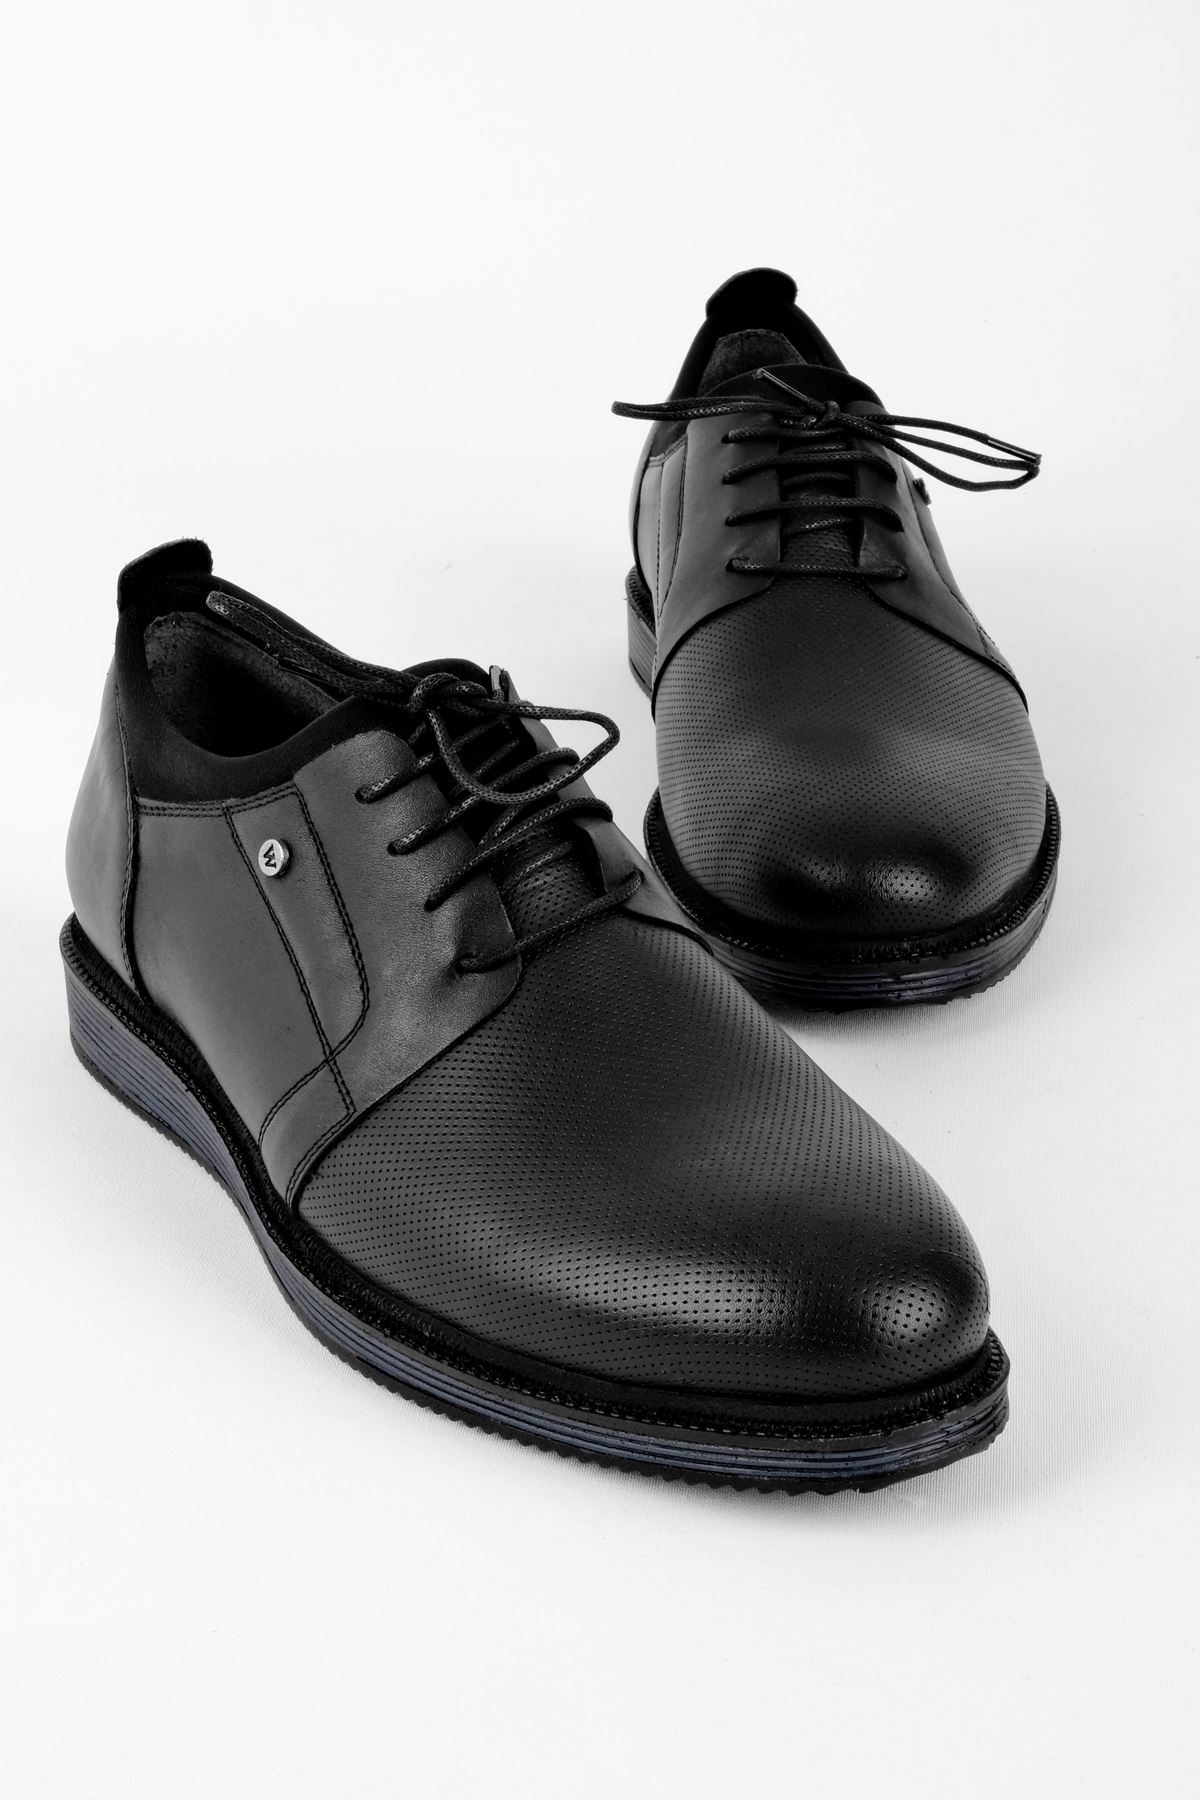 Juno Hakiki Deri Erkek Ayakkabı Klasik-siyah